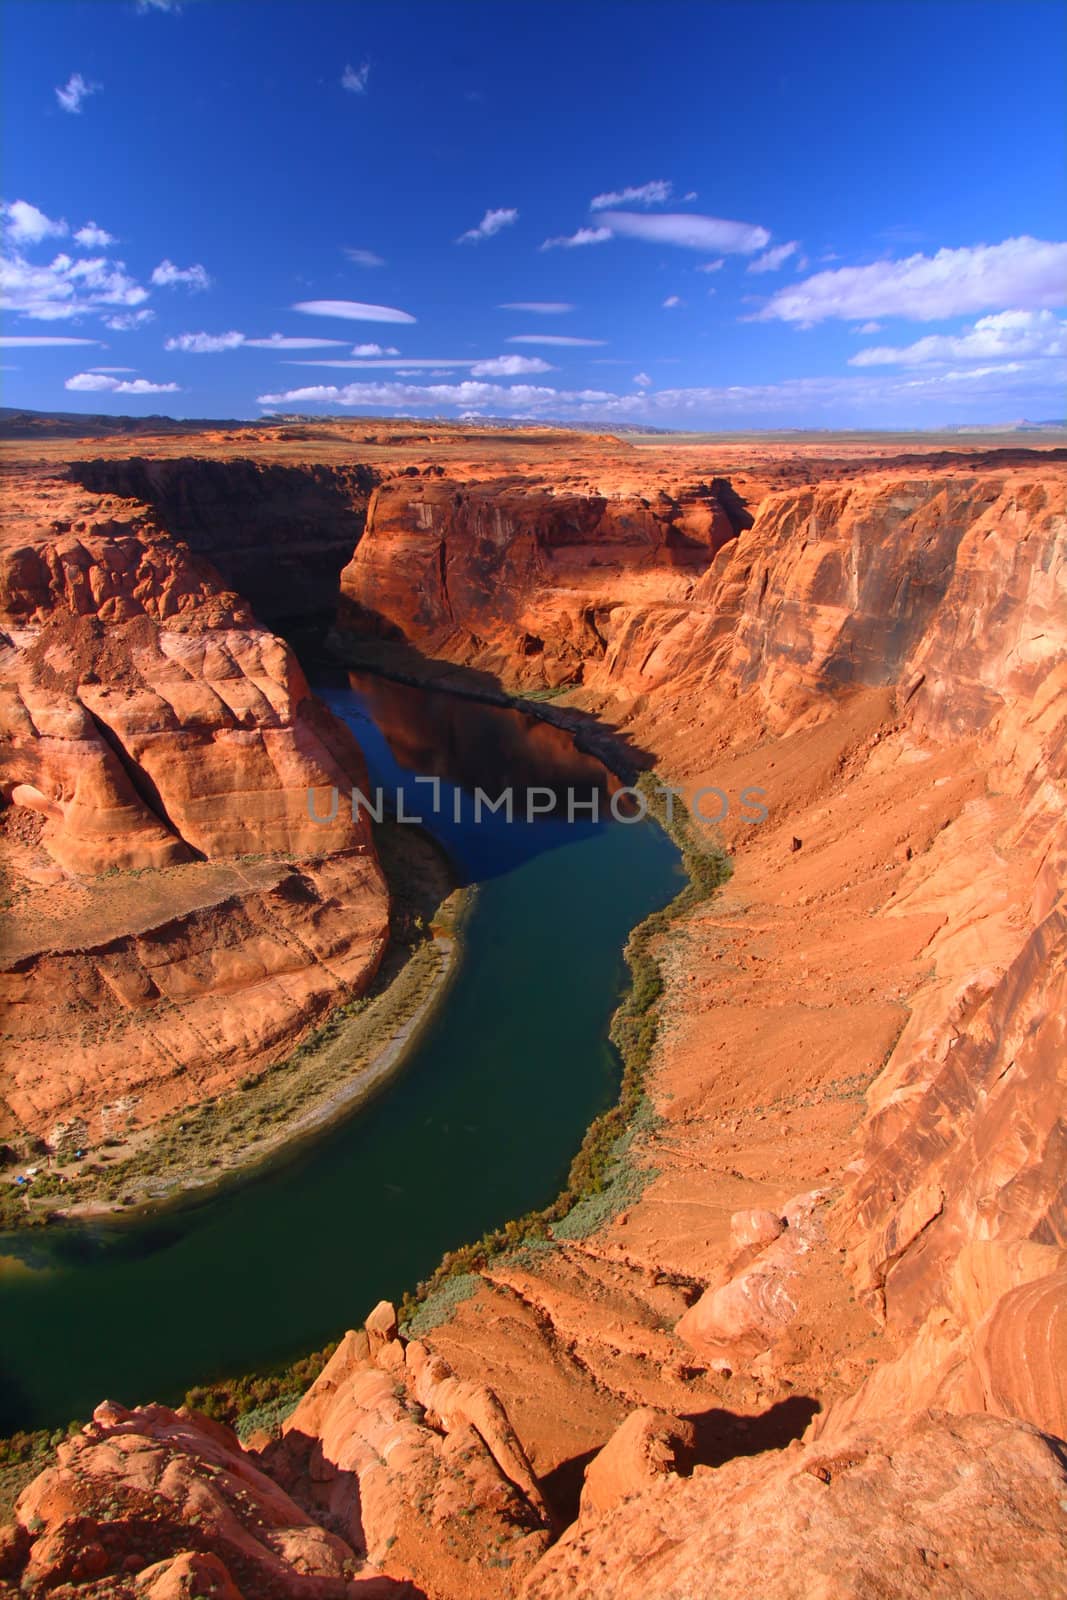 Colorado River in Arizona by Wirepec